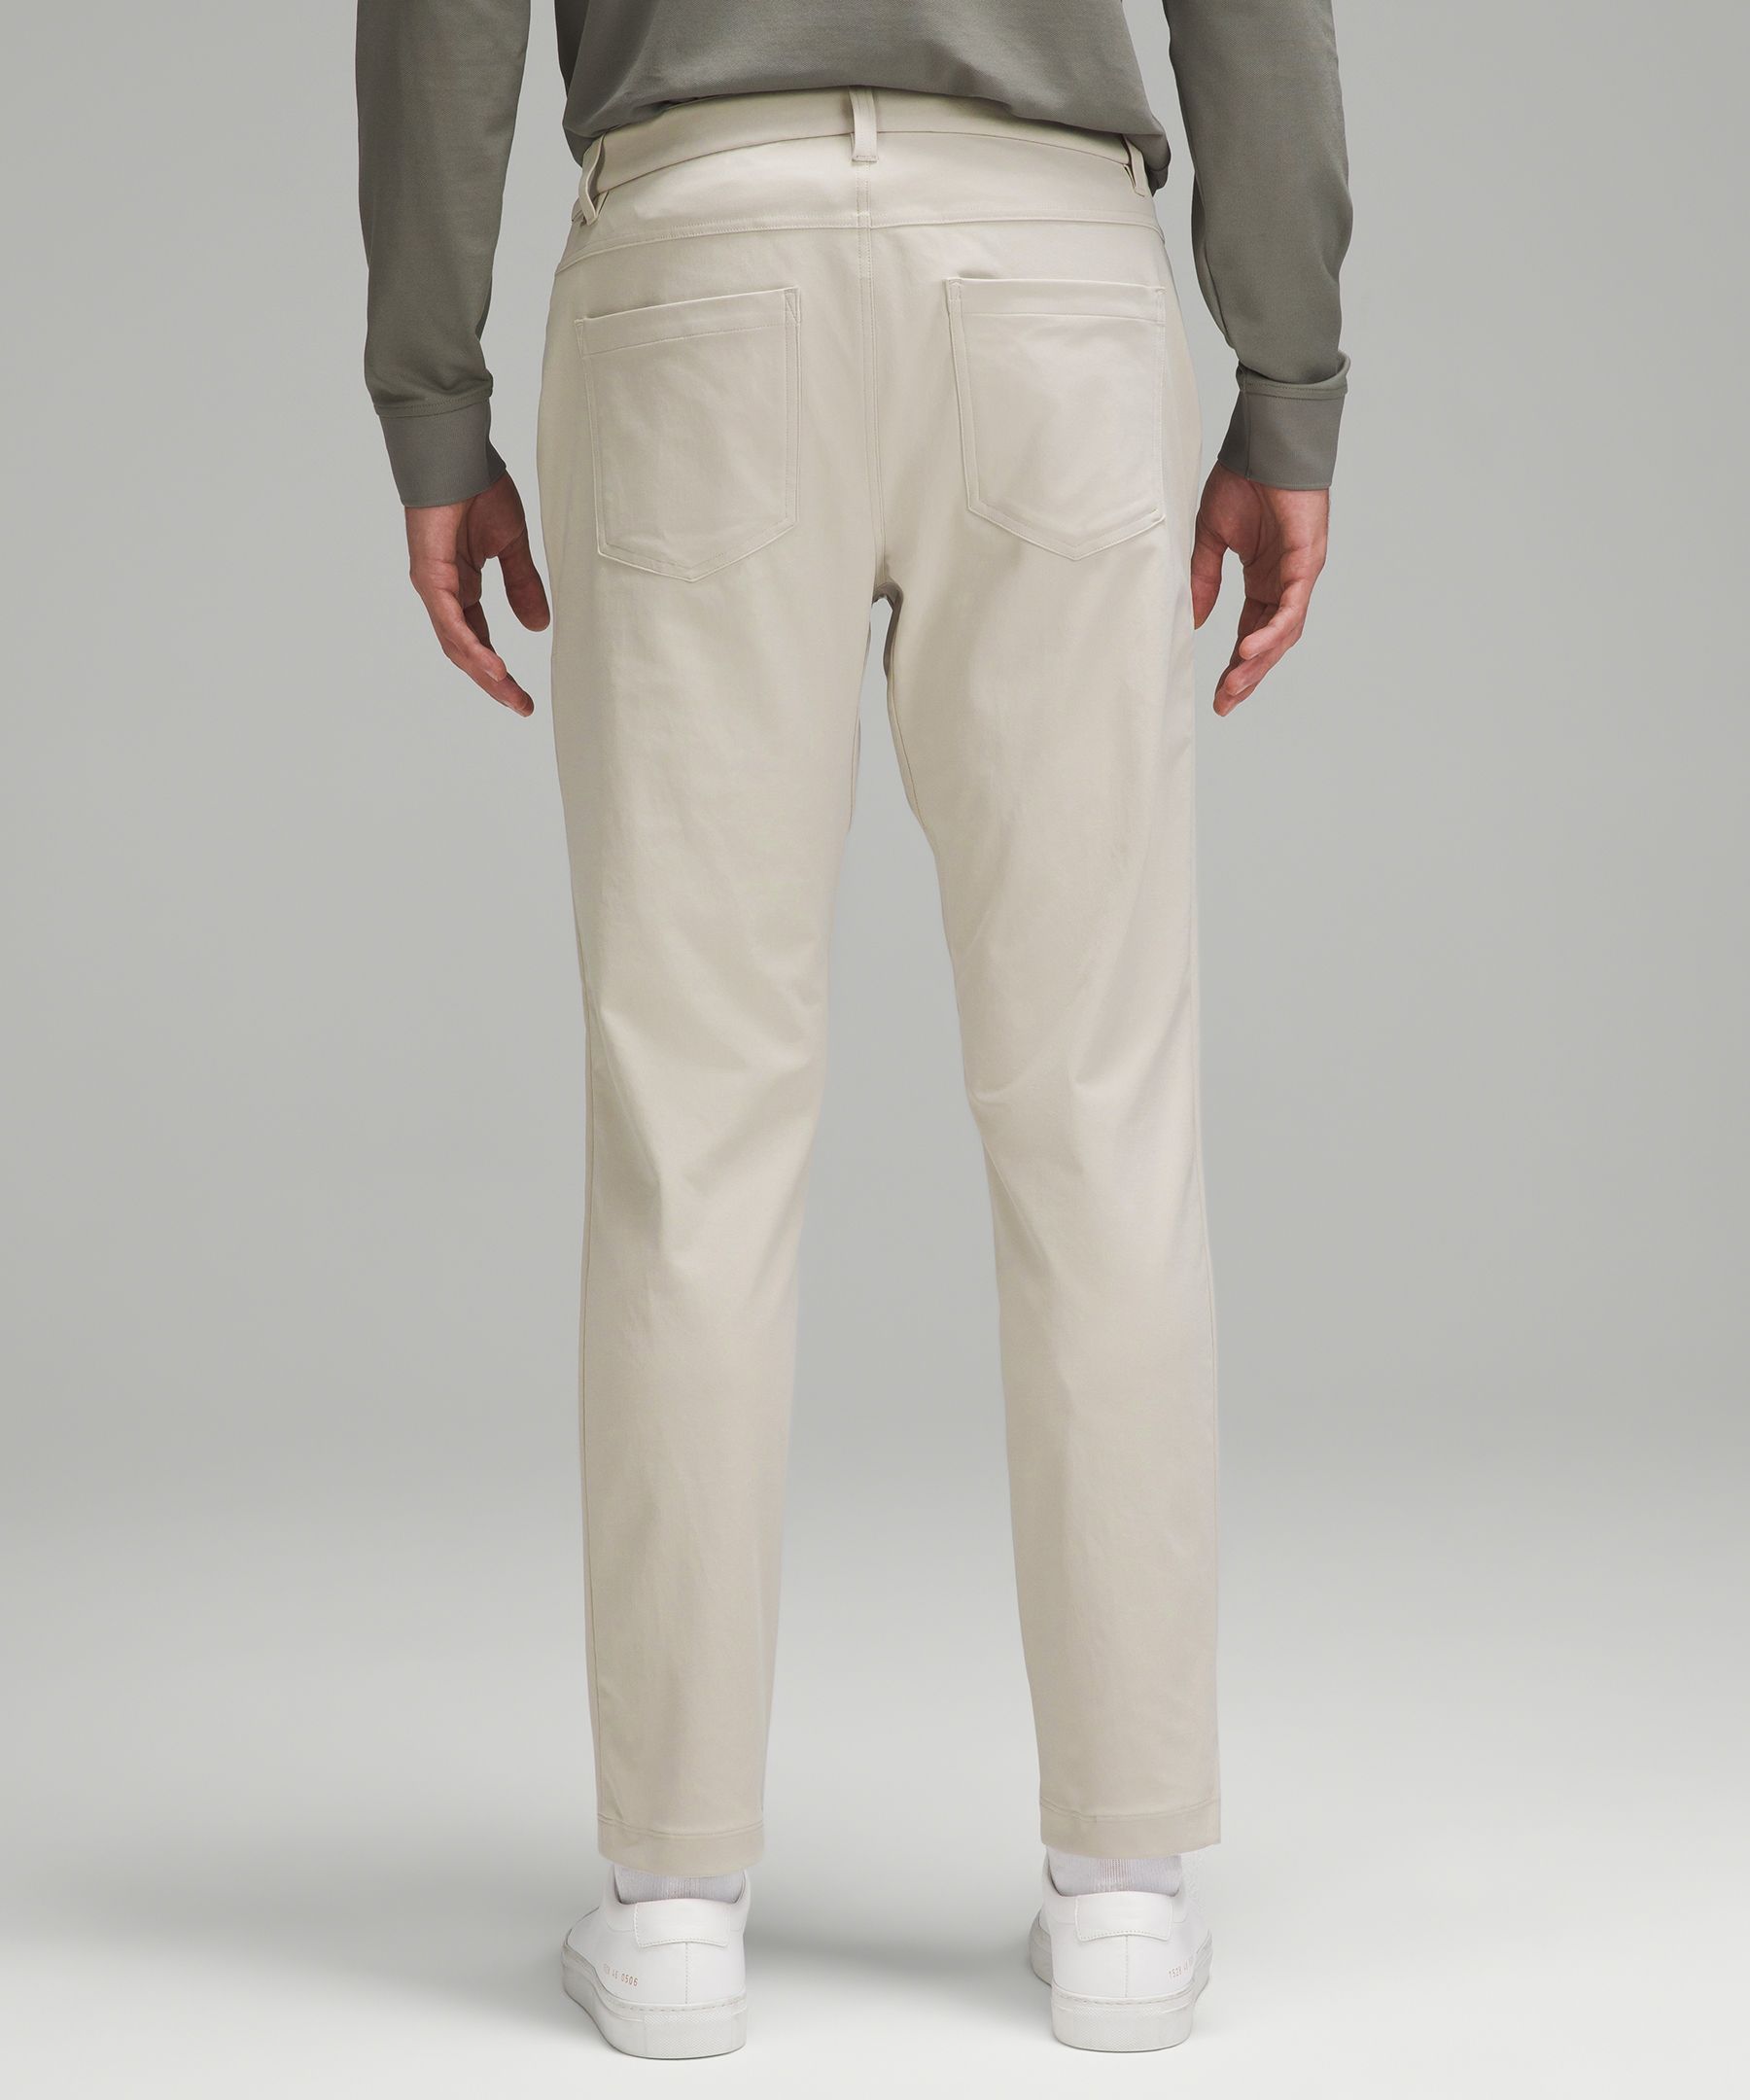 ABC Slim-Fit 5 Pocket Pant 34L *Warpstreme, Men's Trousers, lululemon